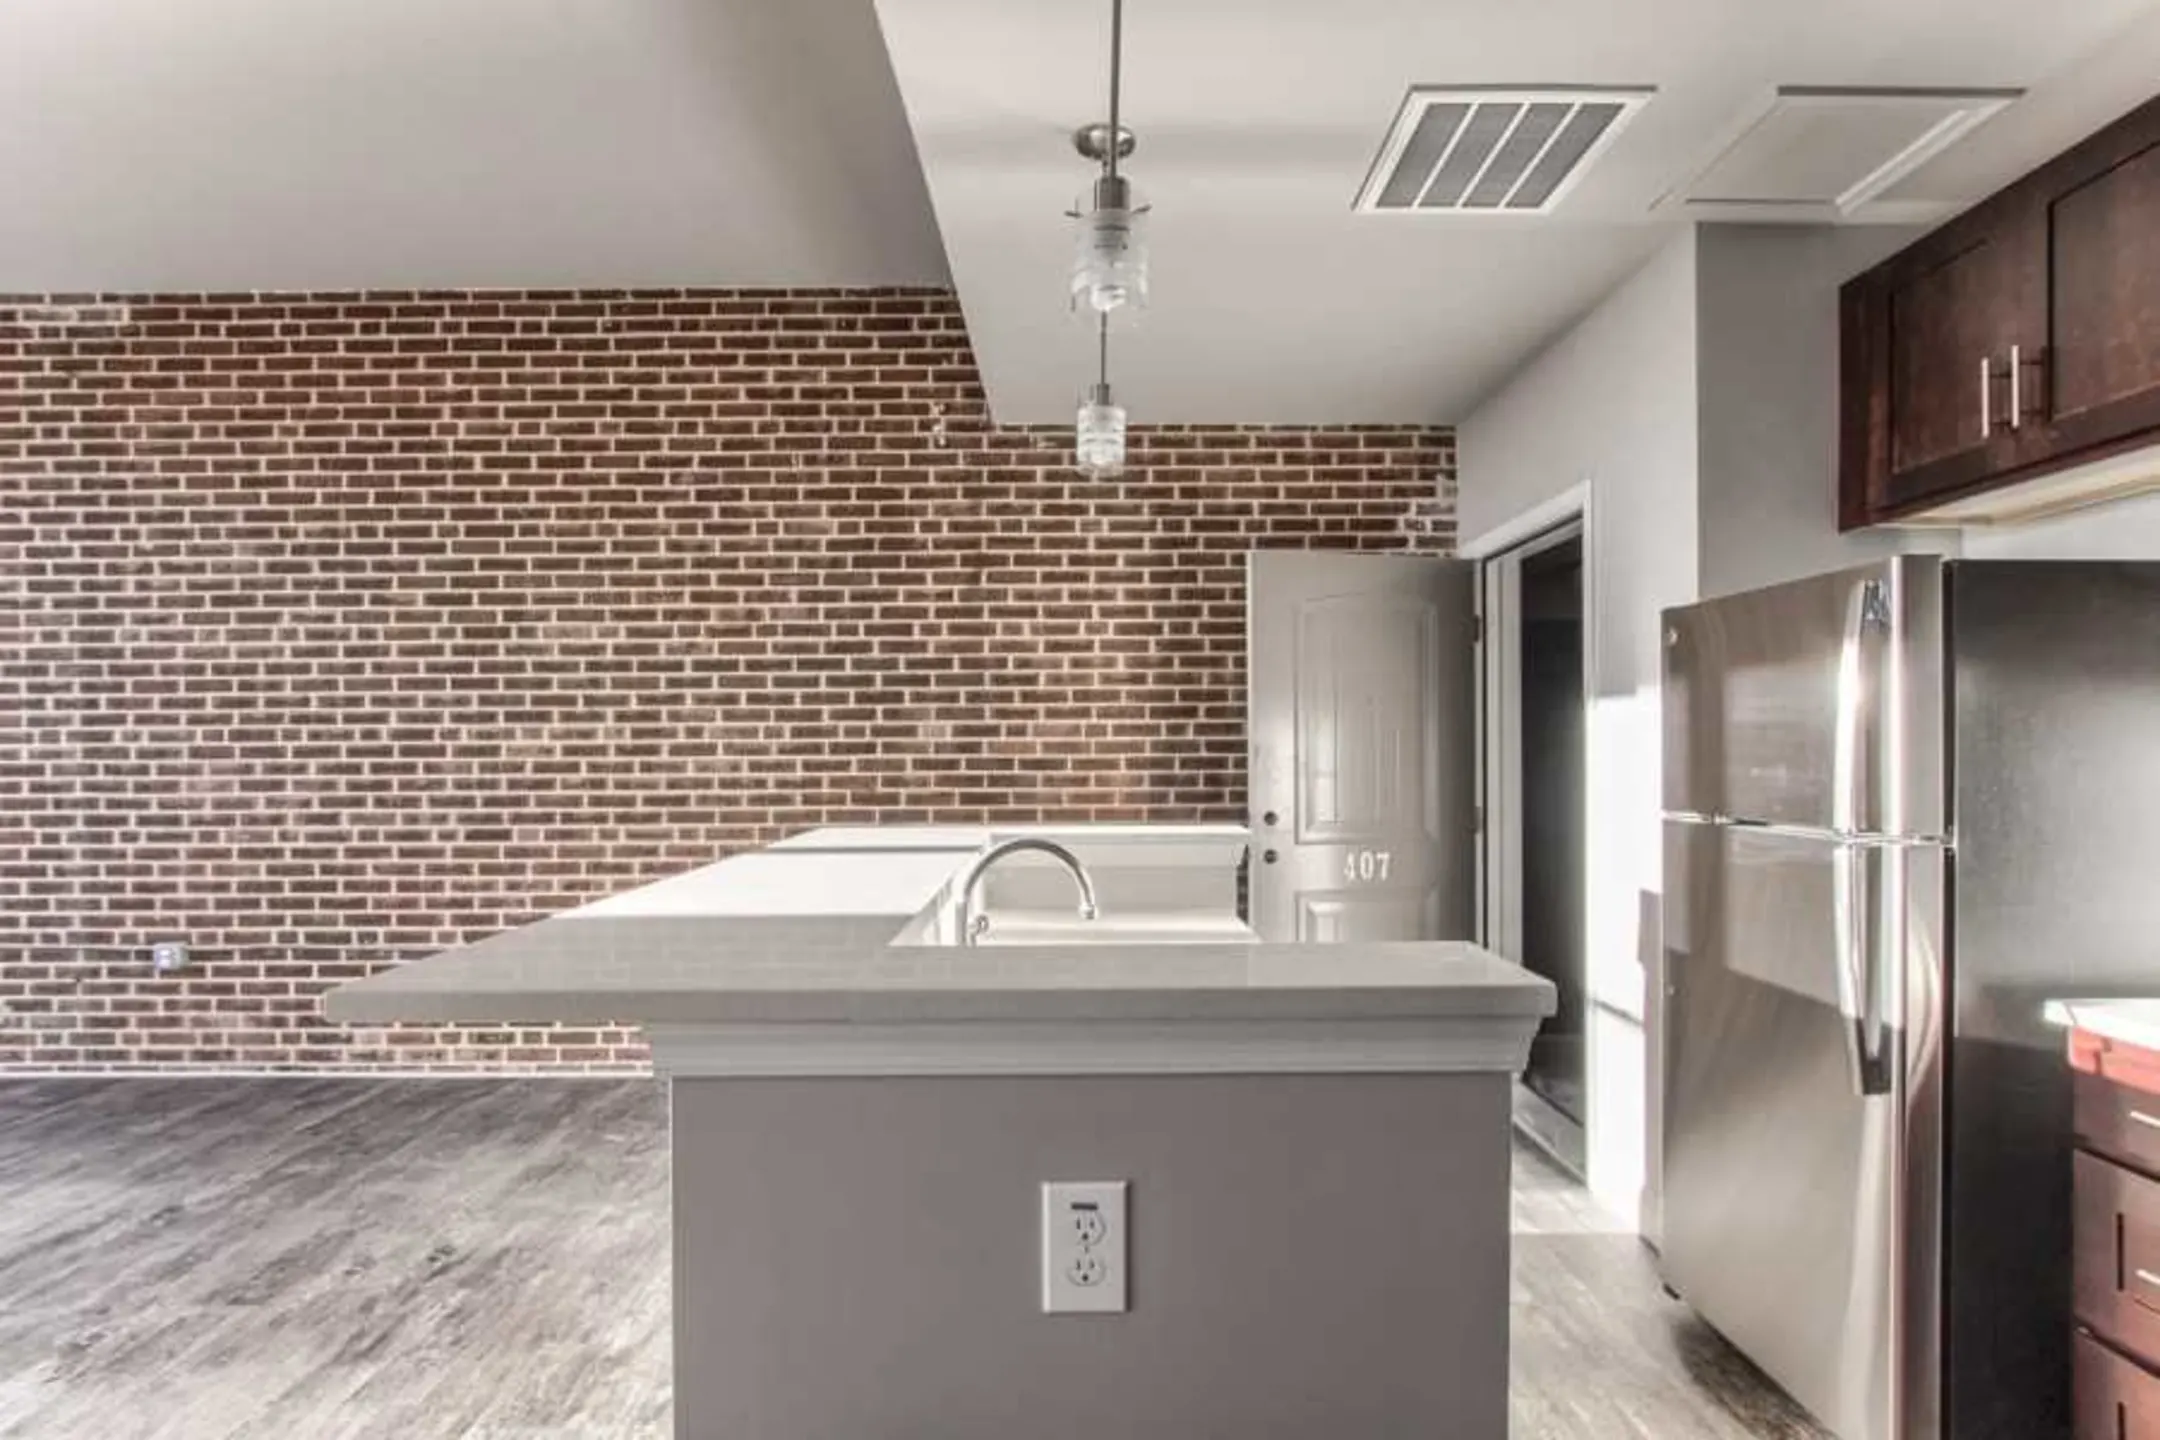 Kitchen - Two32 Apartments - York, PA